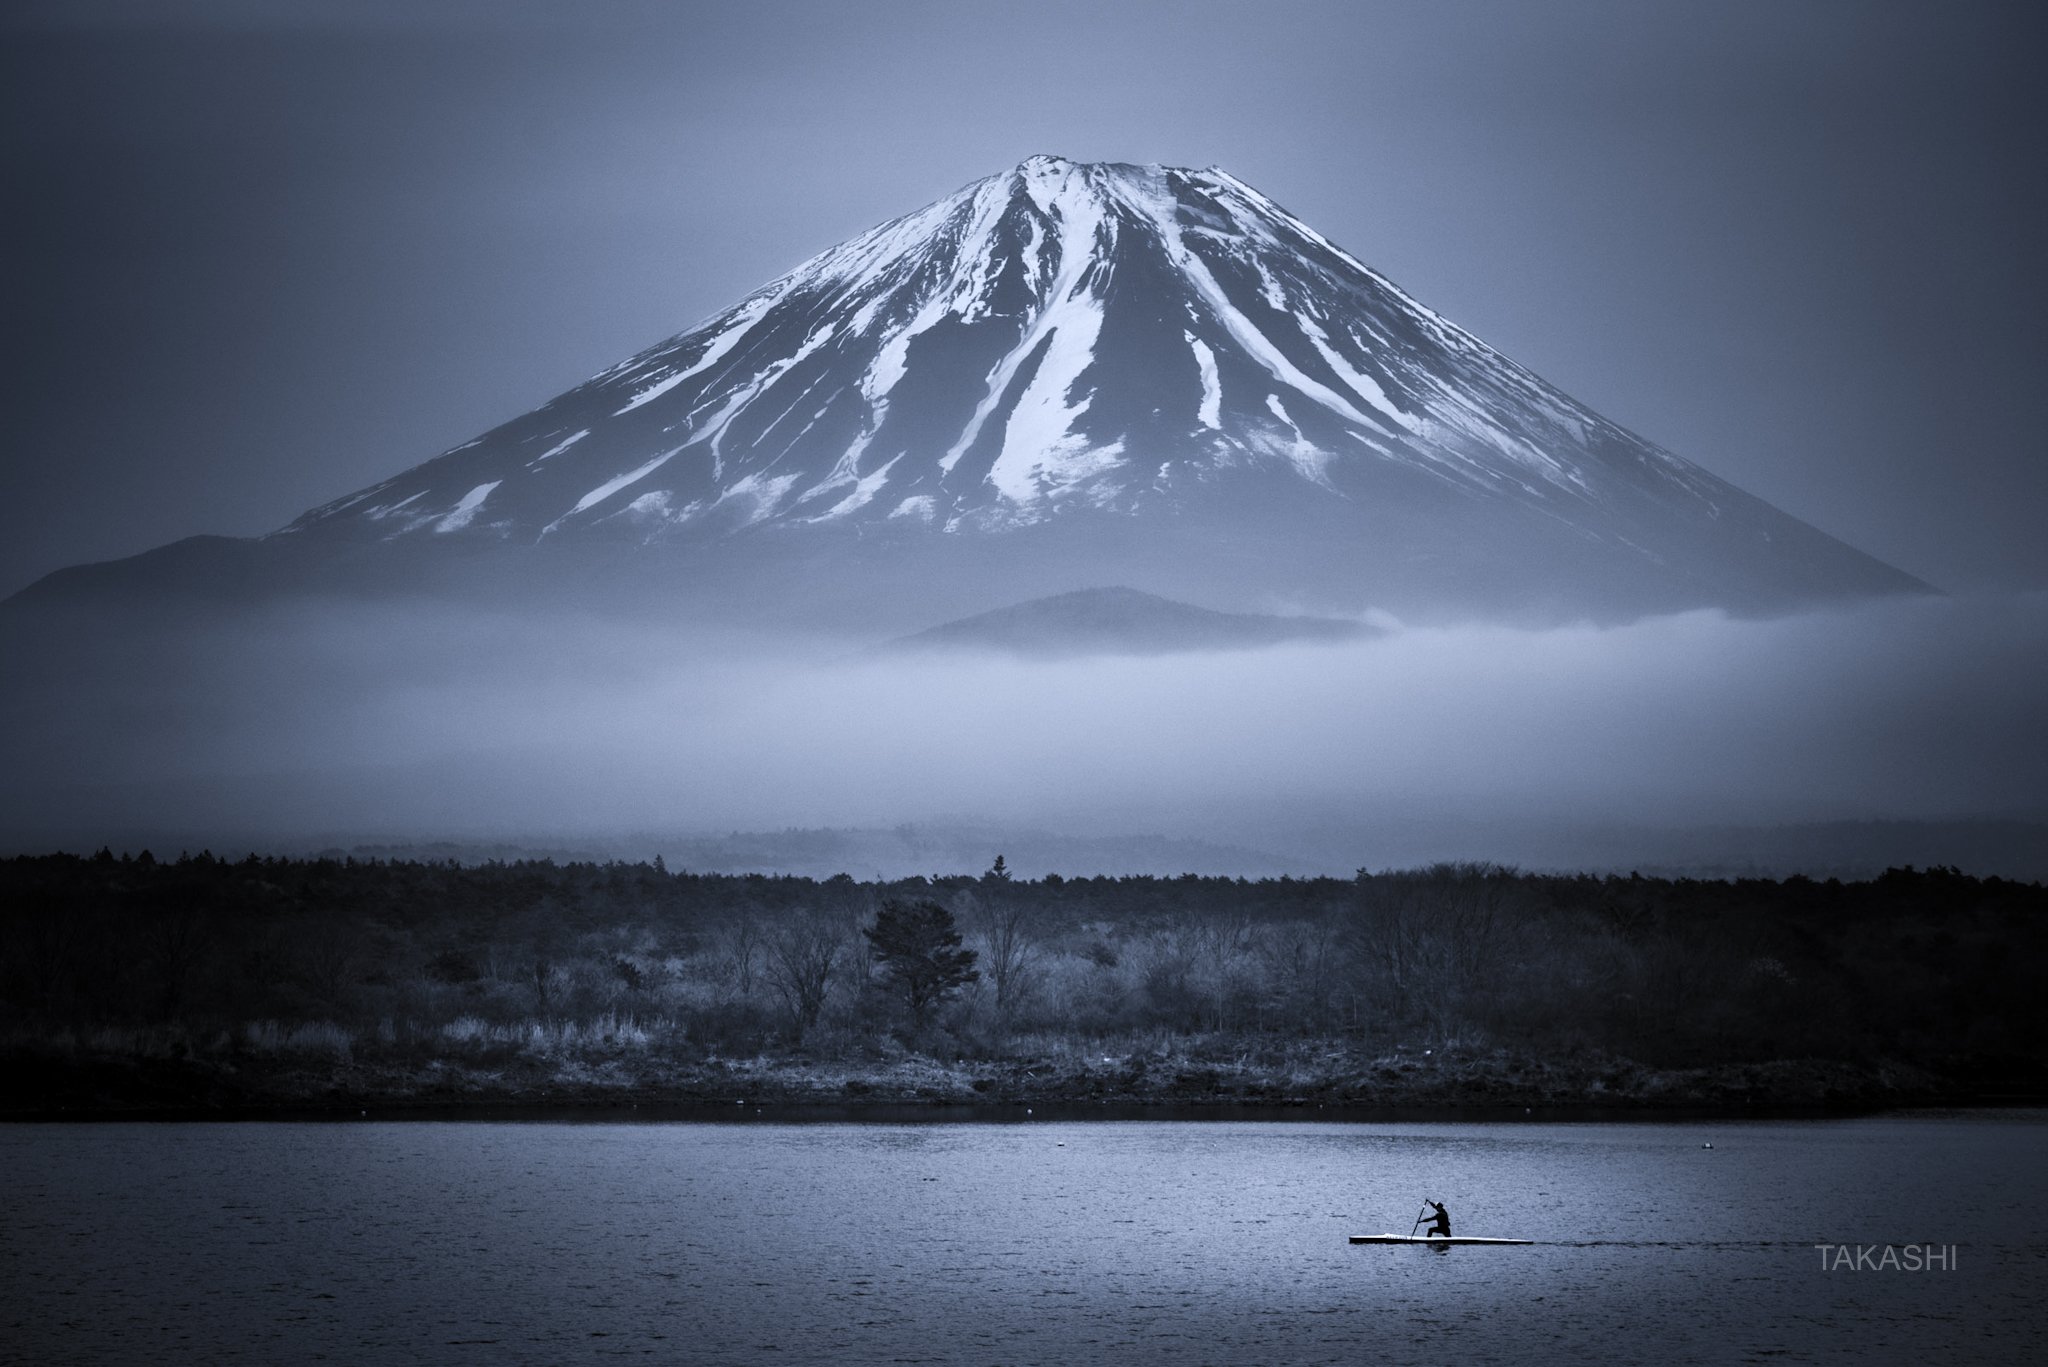 Fuji,Japan,mountain,cloud,boat,training,lake,water,cloud, Takashi